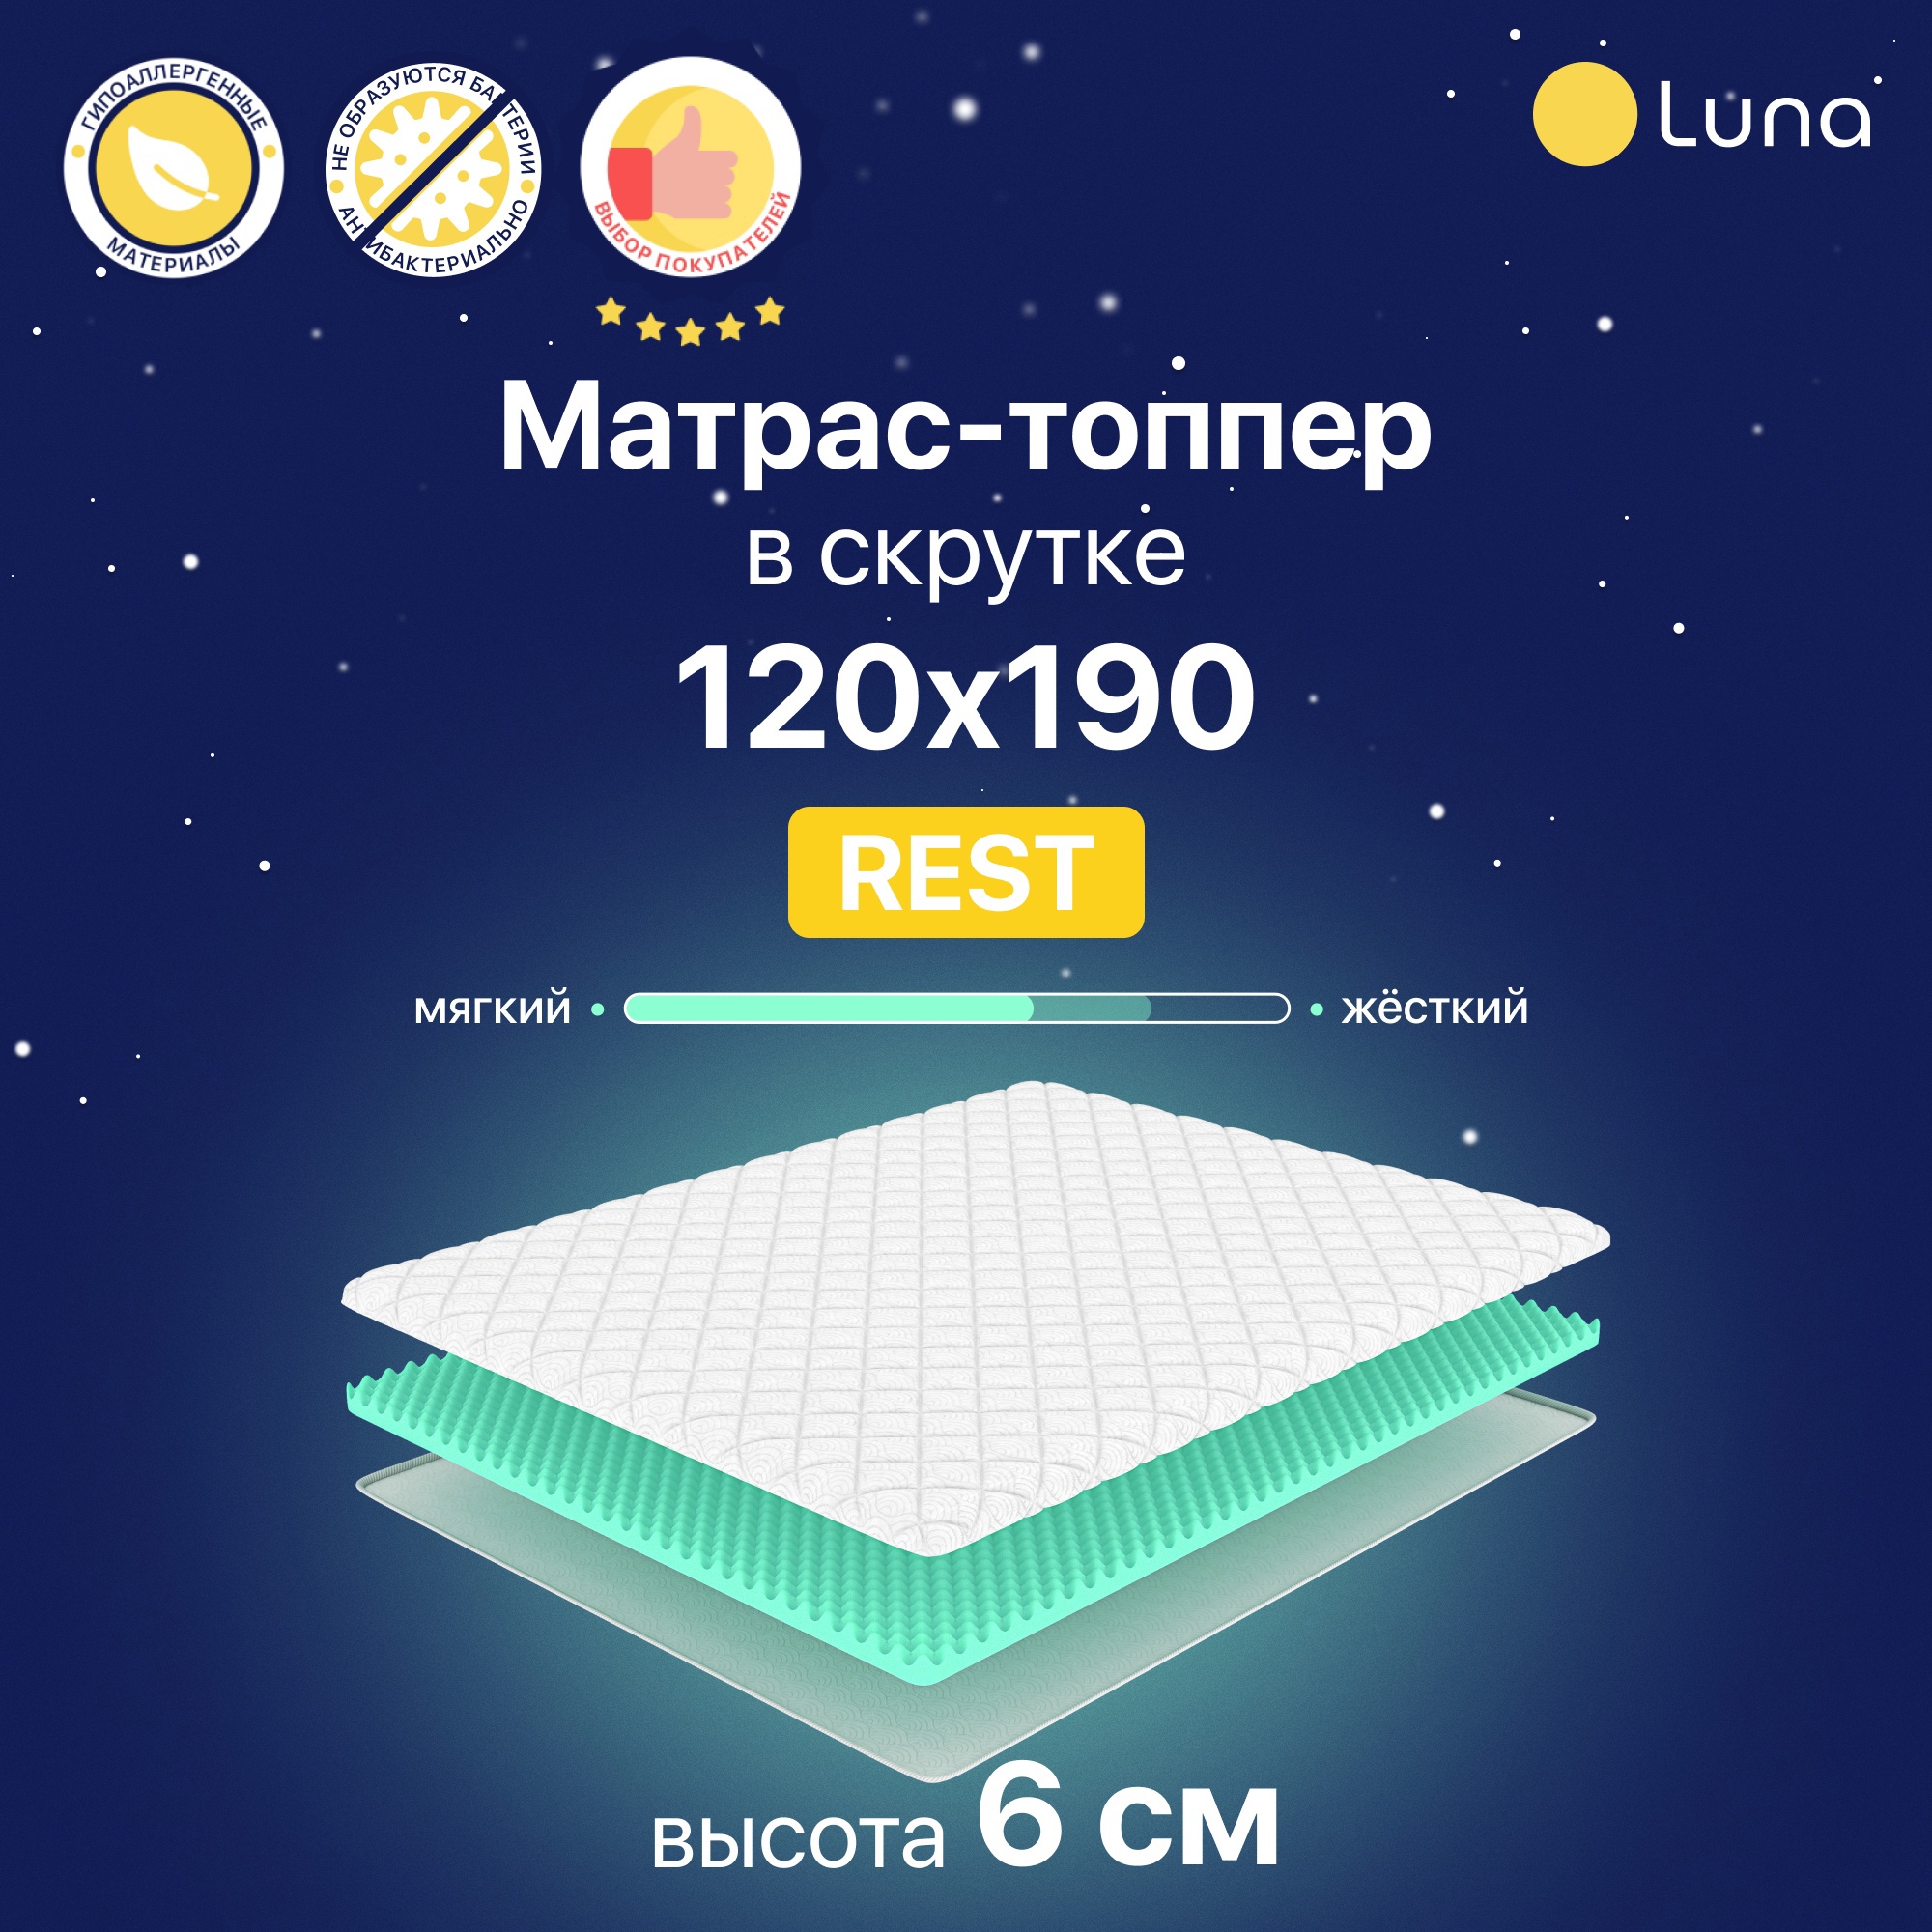 Матрас-топпер Luna Rest двухсторонний 120х190 см, высота 6 см - купить в Москве, цены на Мегамаркет | 600011494082